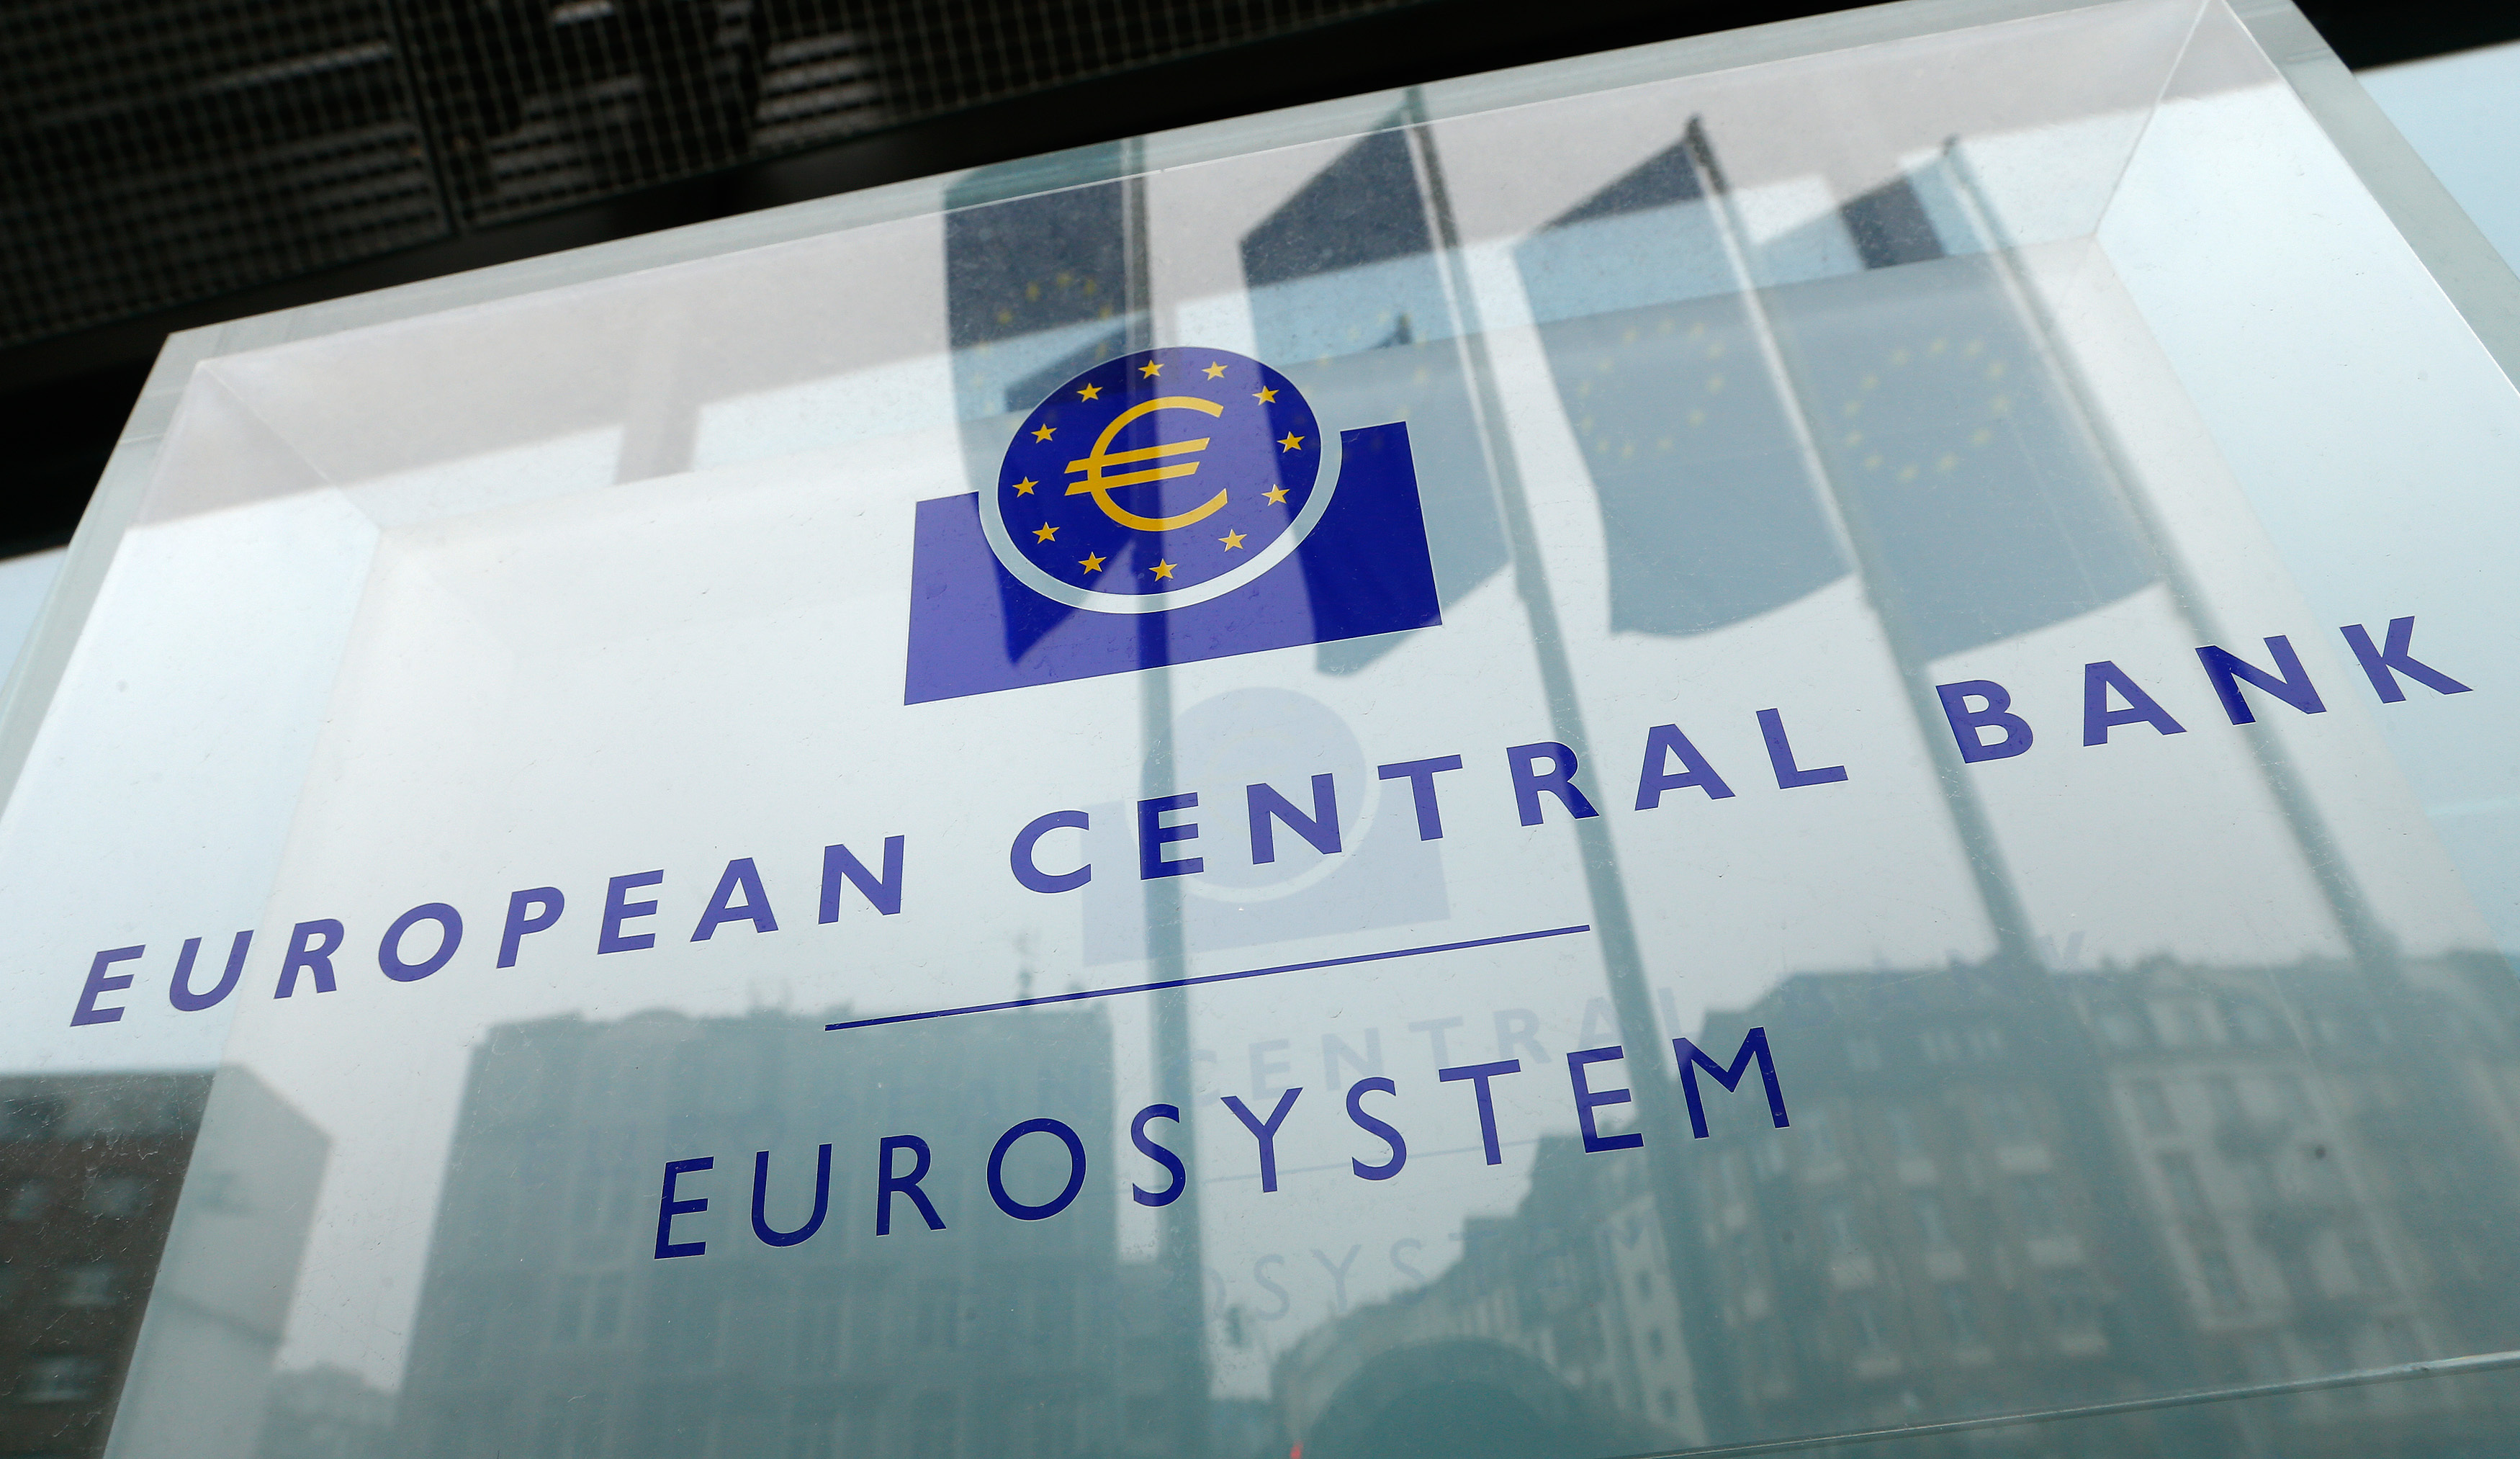 Malgré la hausse des taux, les banques peuvent réaliser d'importants gains grâce à la BCE